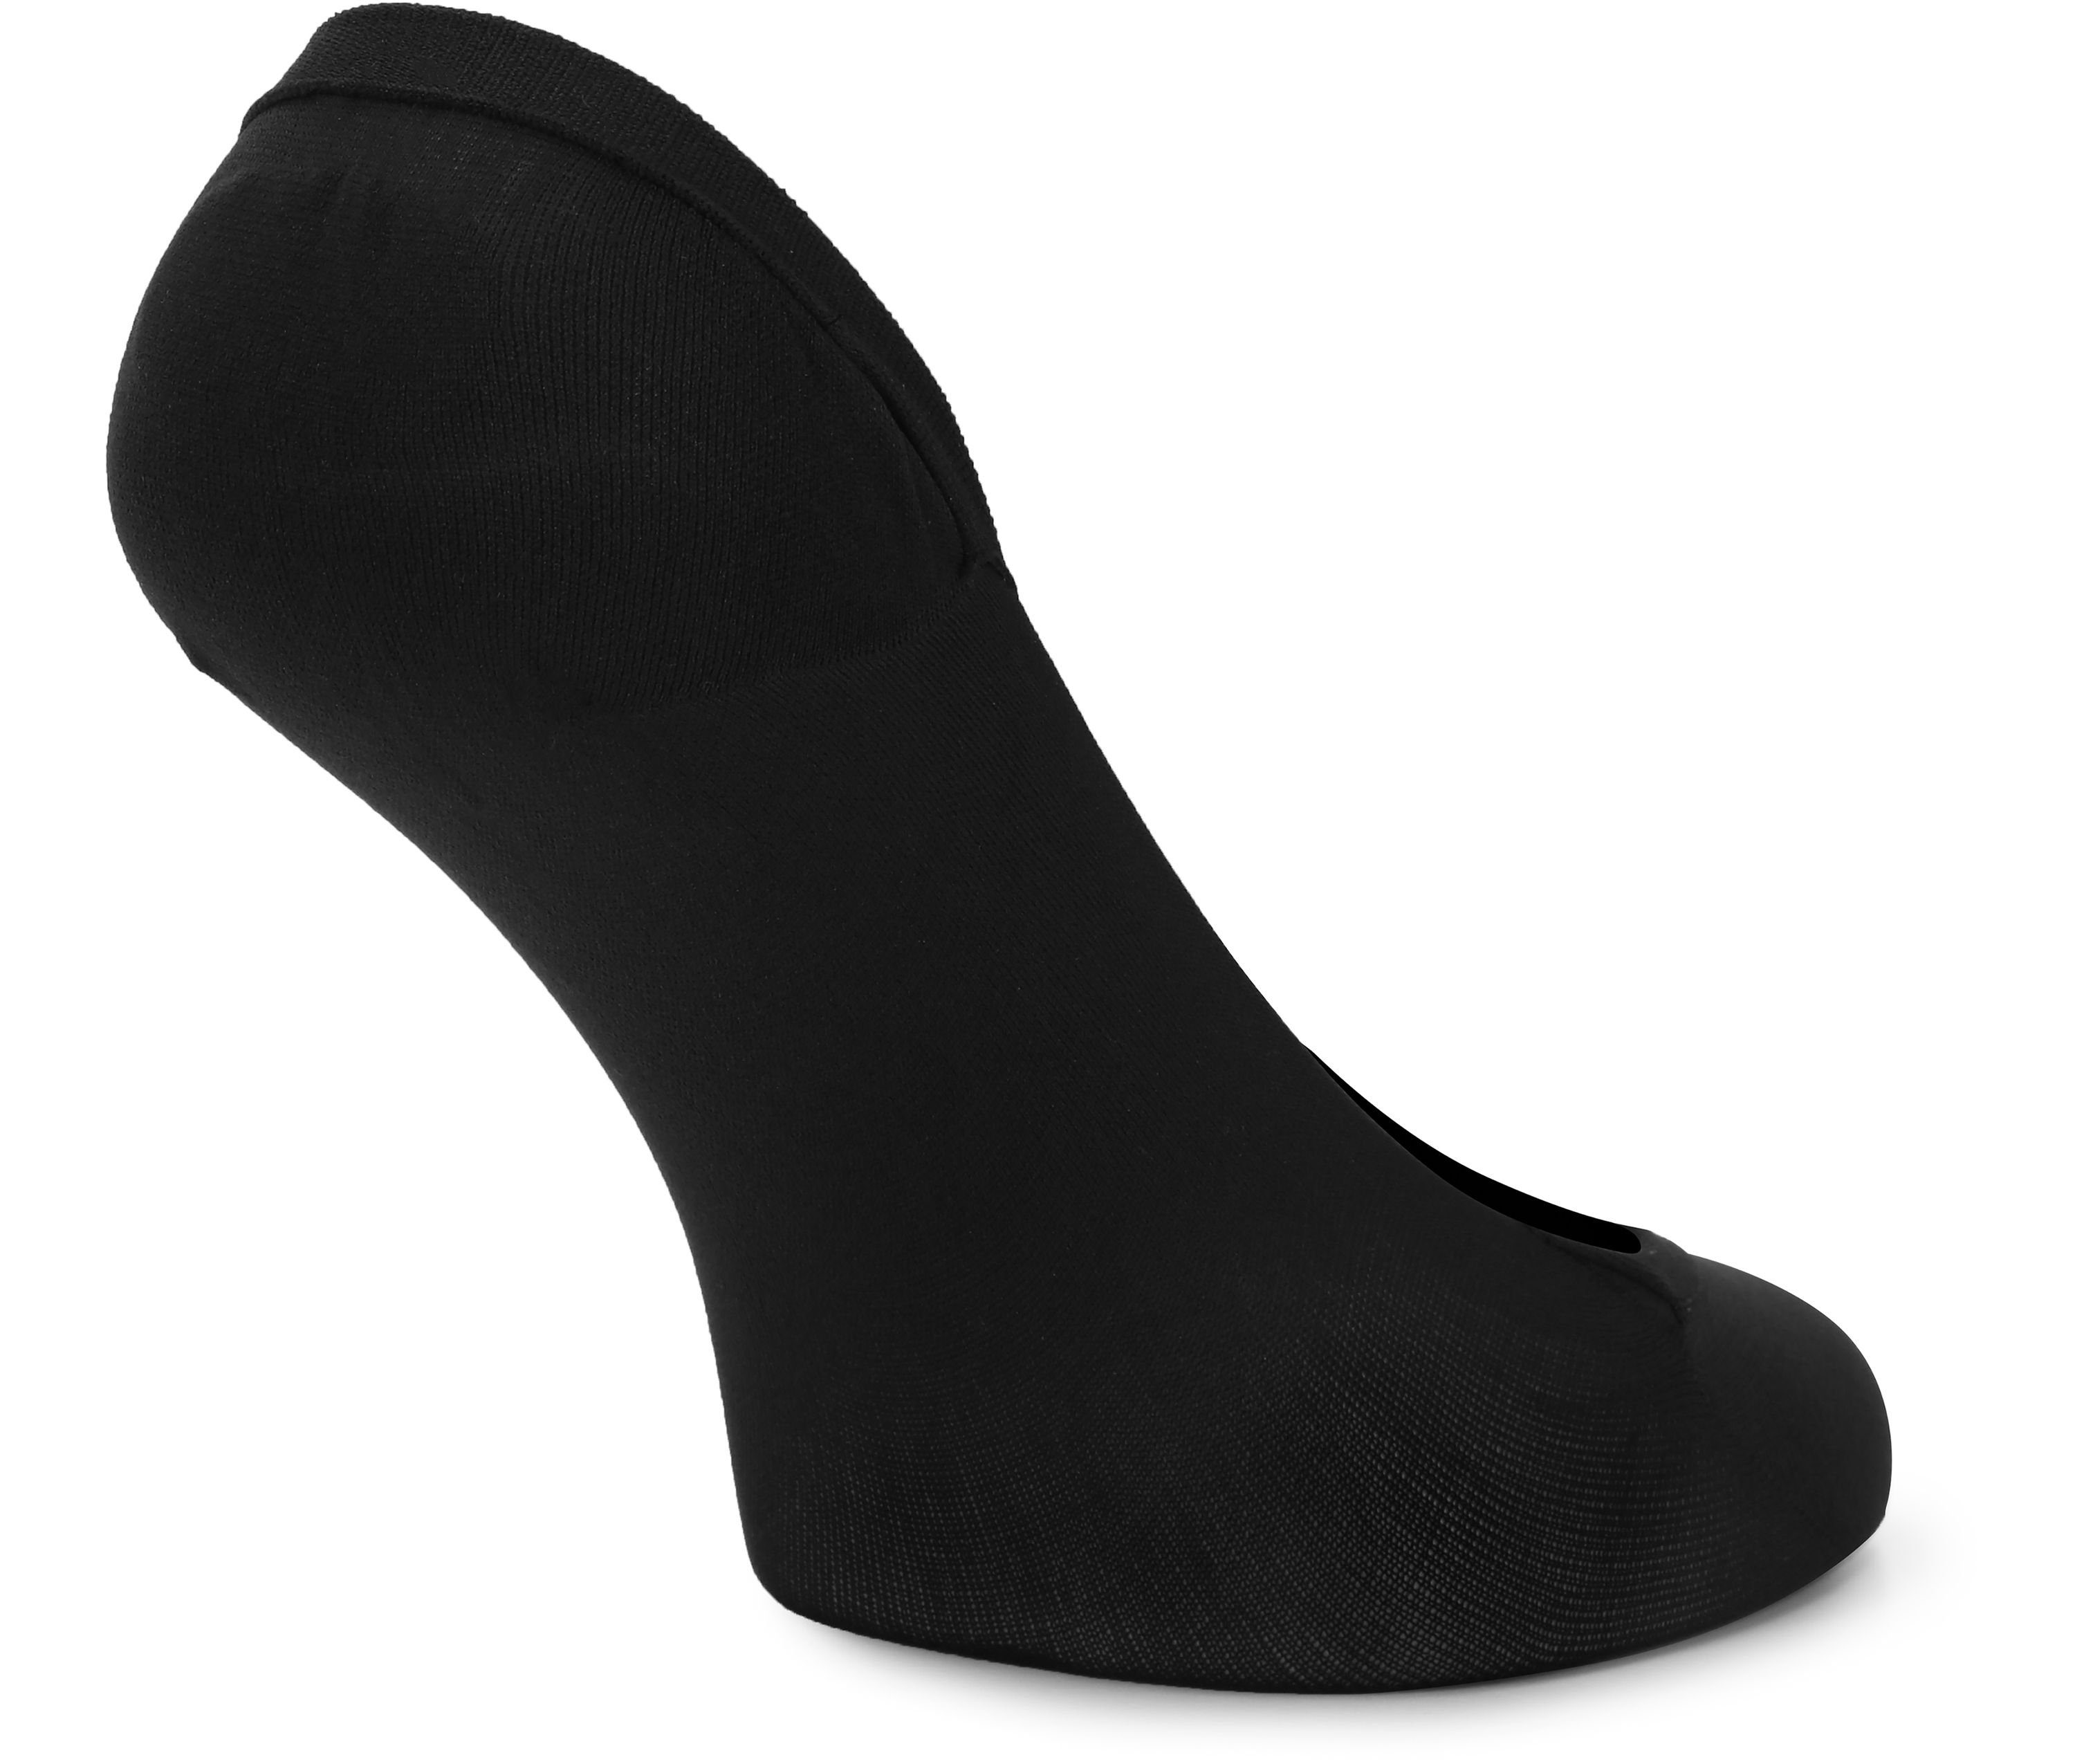 Halbsocken Atmungsaktive Socken Füßlinge Socken Style - Damen 2Pack Merry Sneaker Schwarz MSGI046